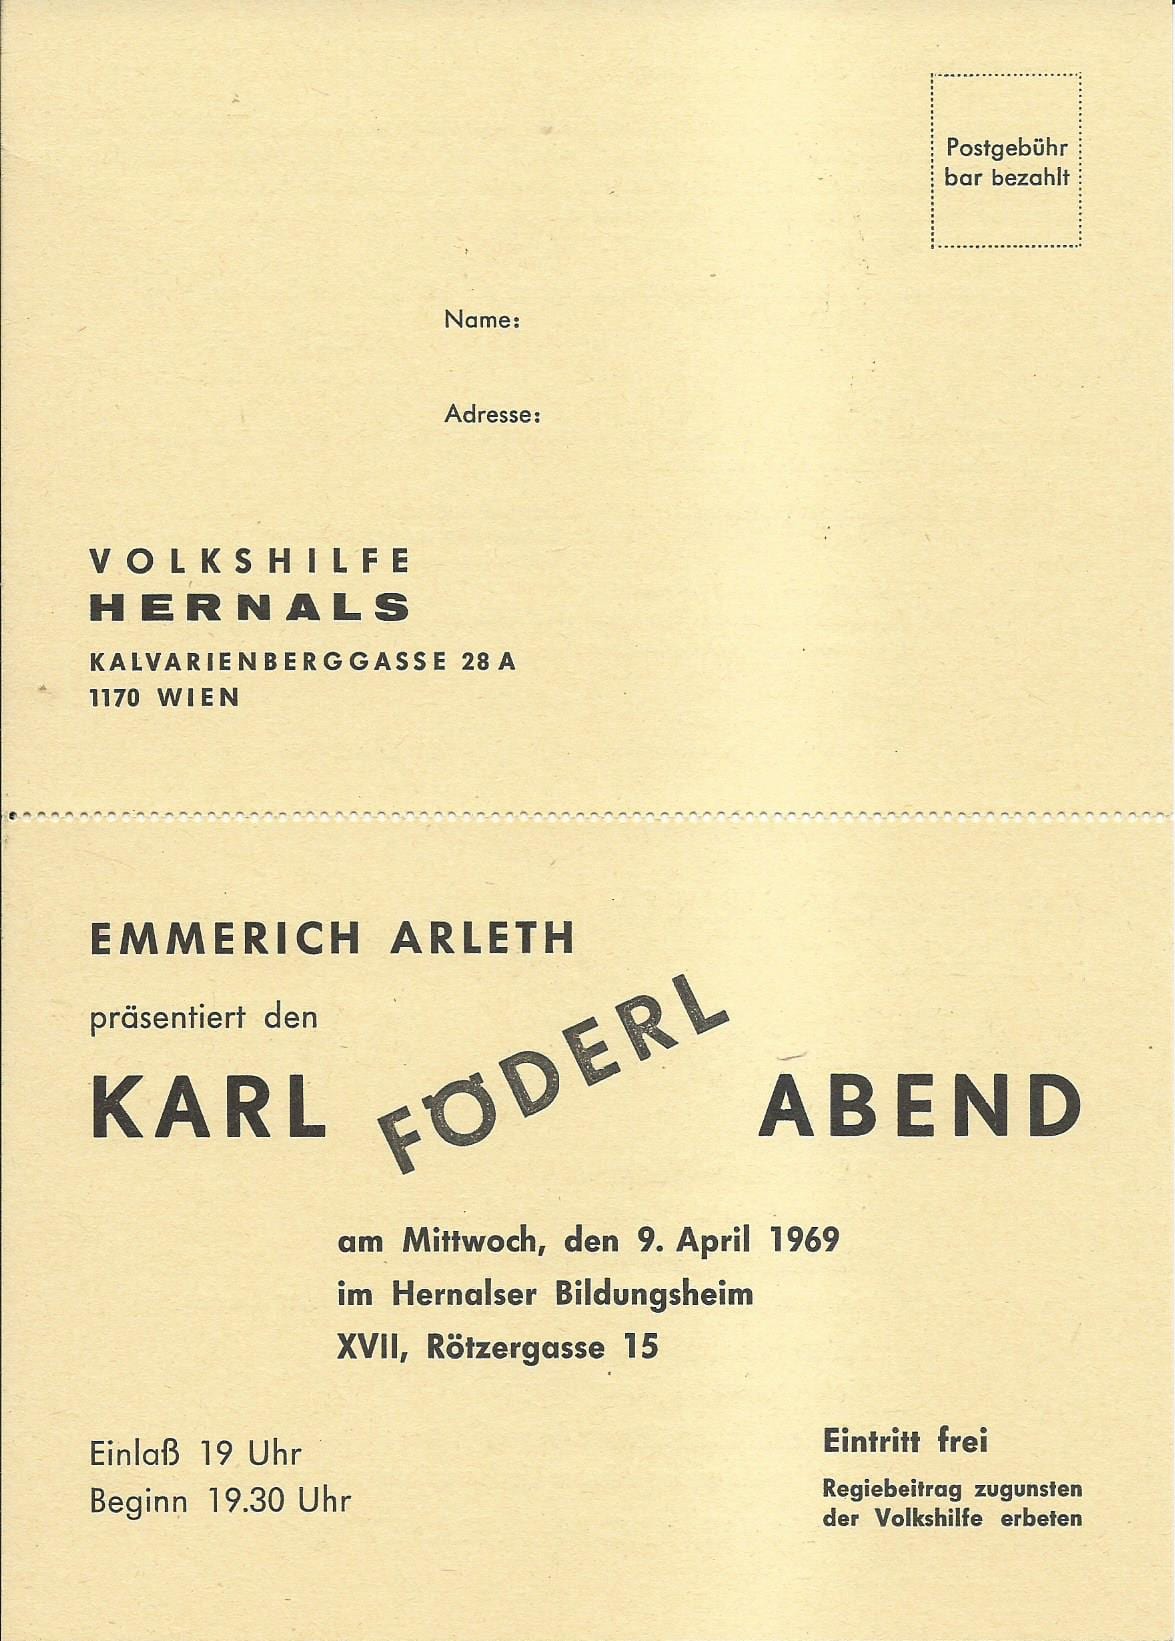 Hernalser Bildungsheim 09.04.1969 – 1